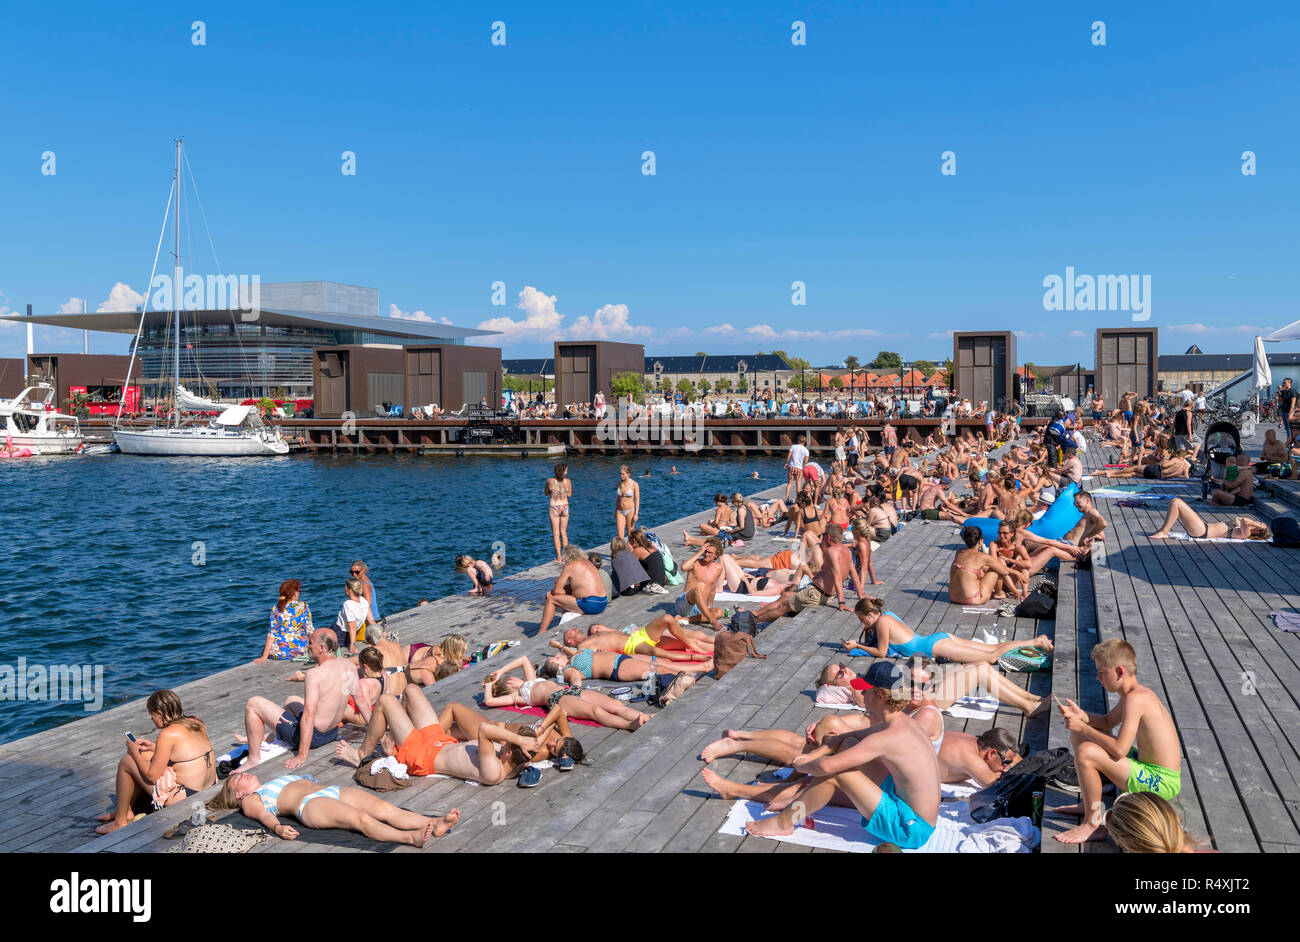 Las personas tomando sol en Kvaesthusgraven, distrito de Nyhavn, Copenhague, Dinamarca Foto de stock